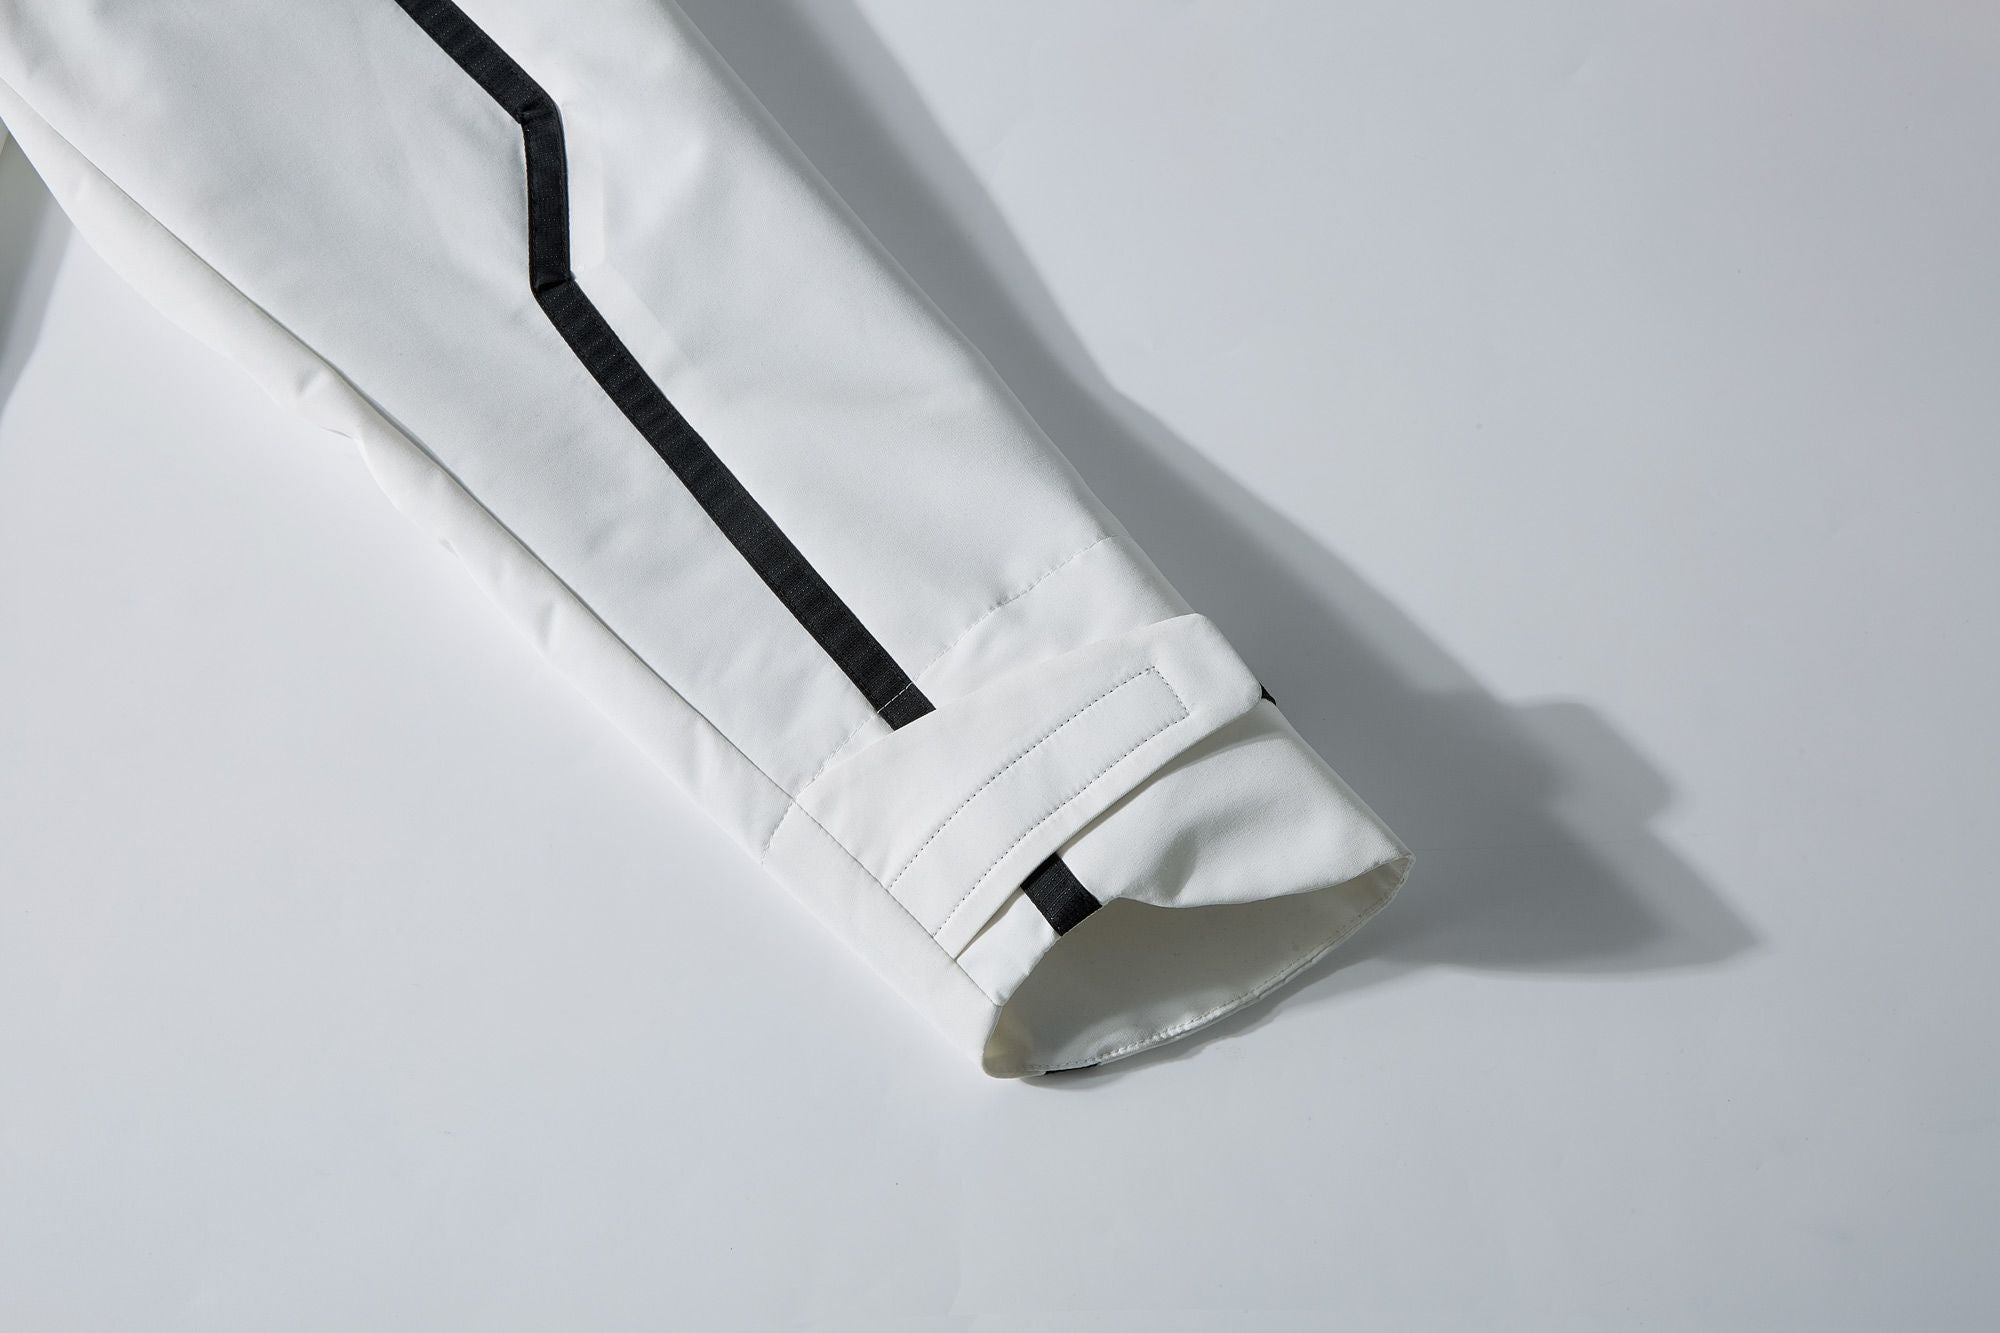 ROSEN-X Volta M65 Jacket in White